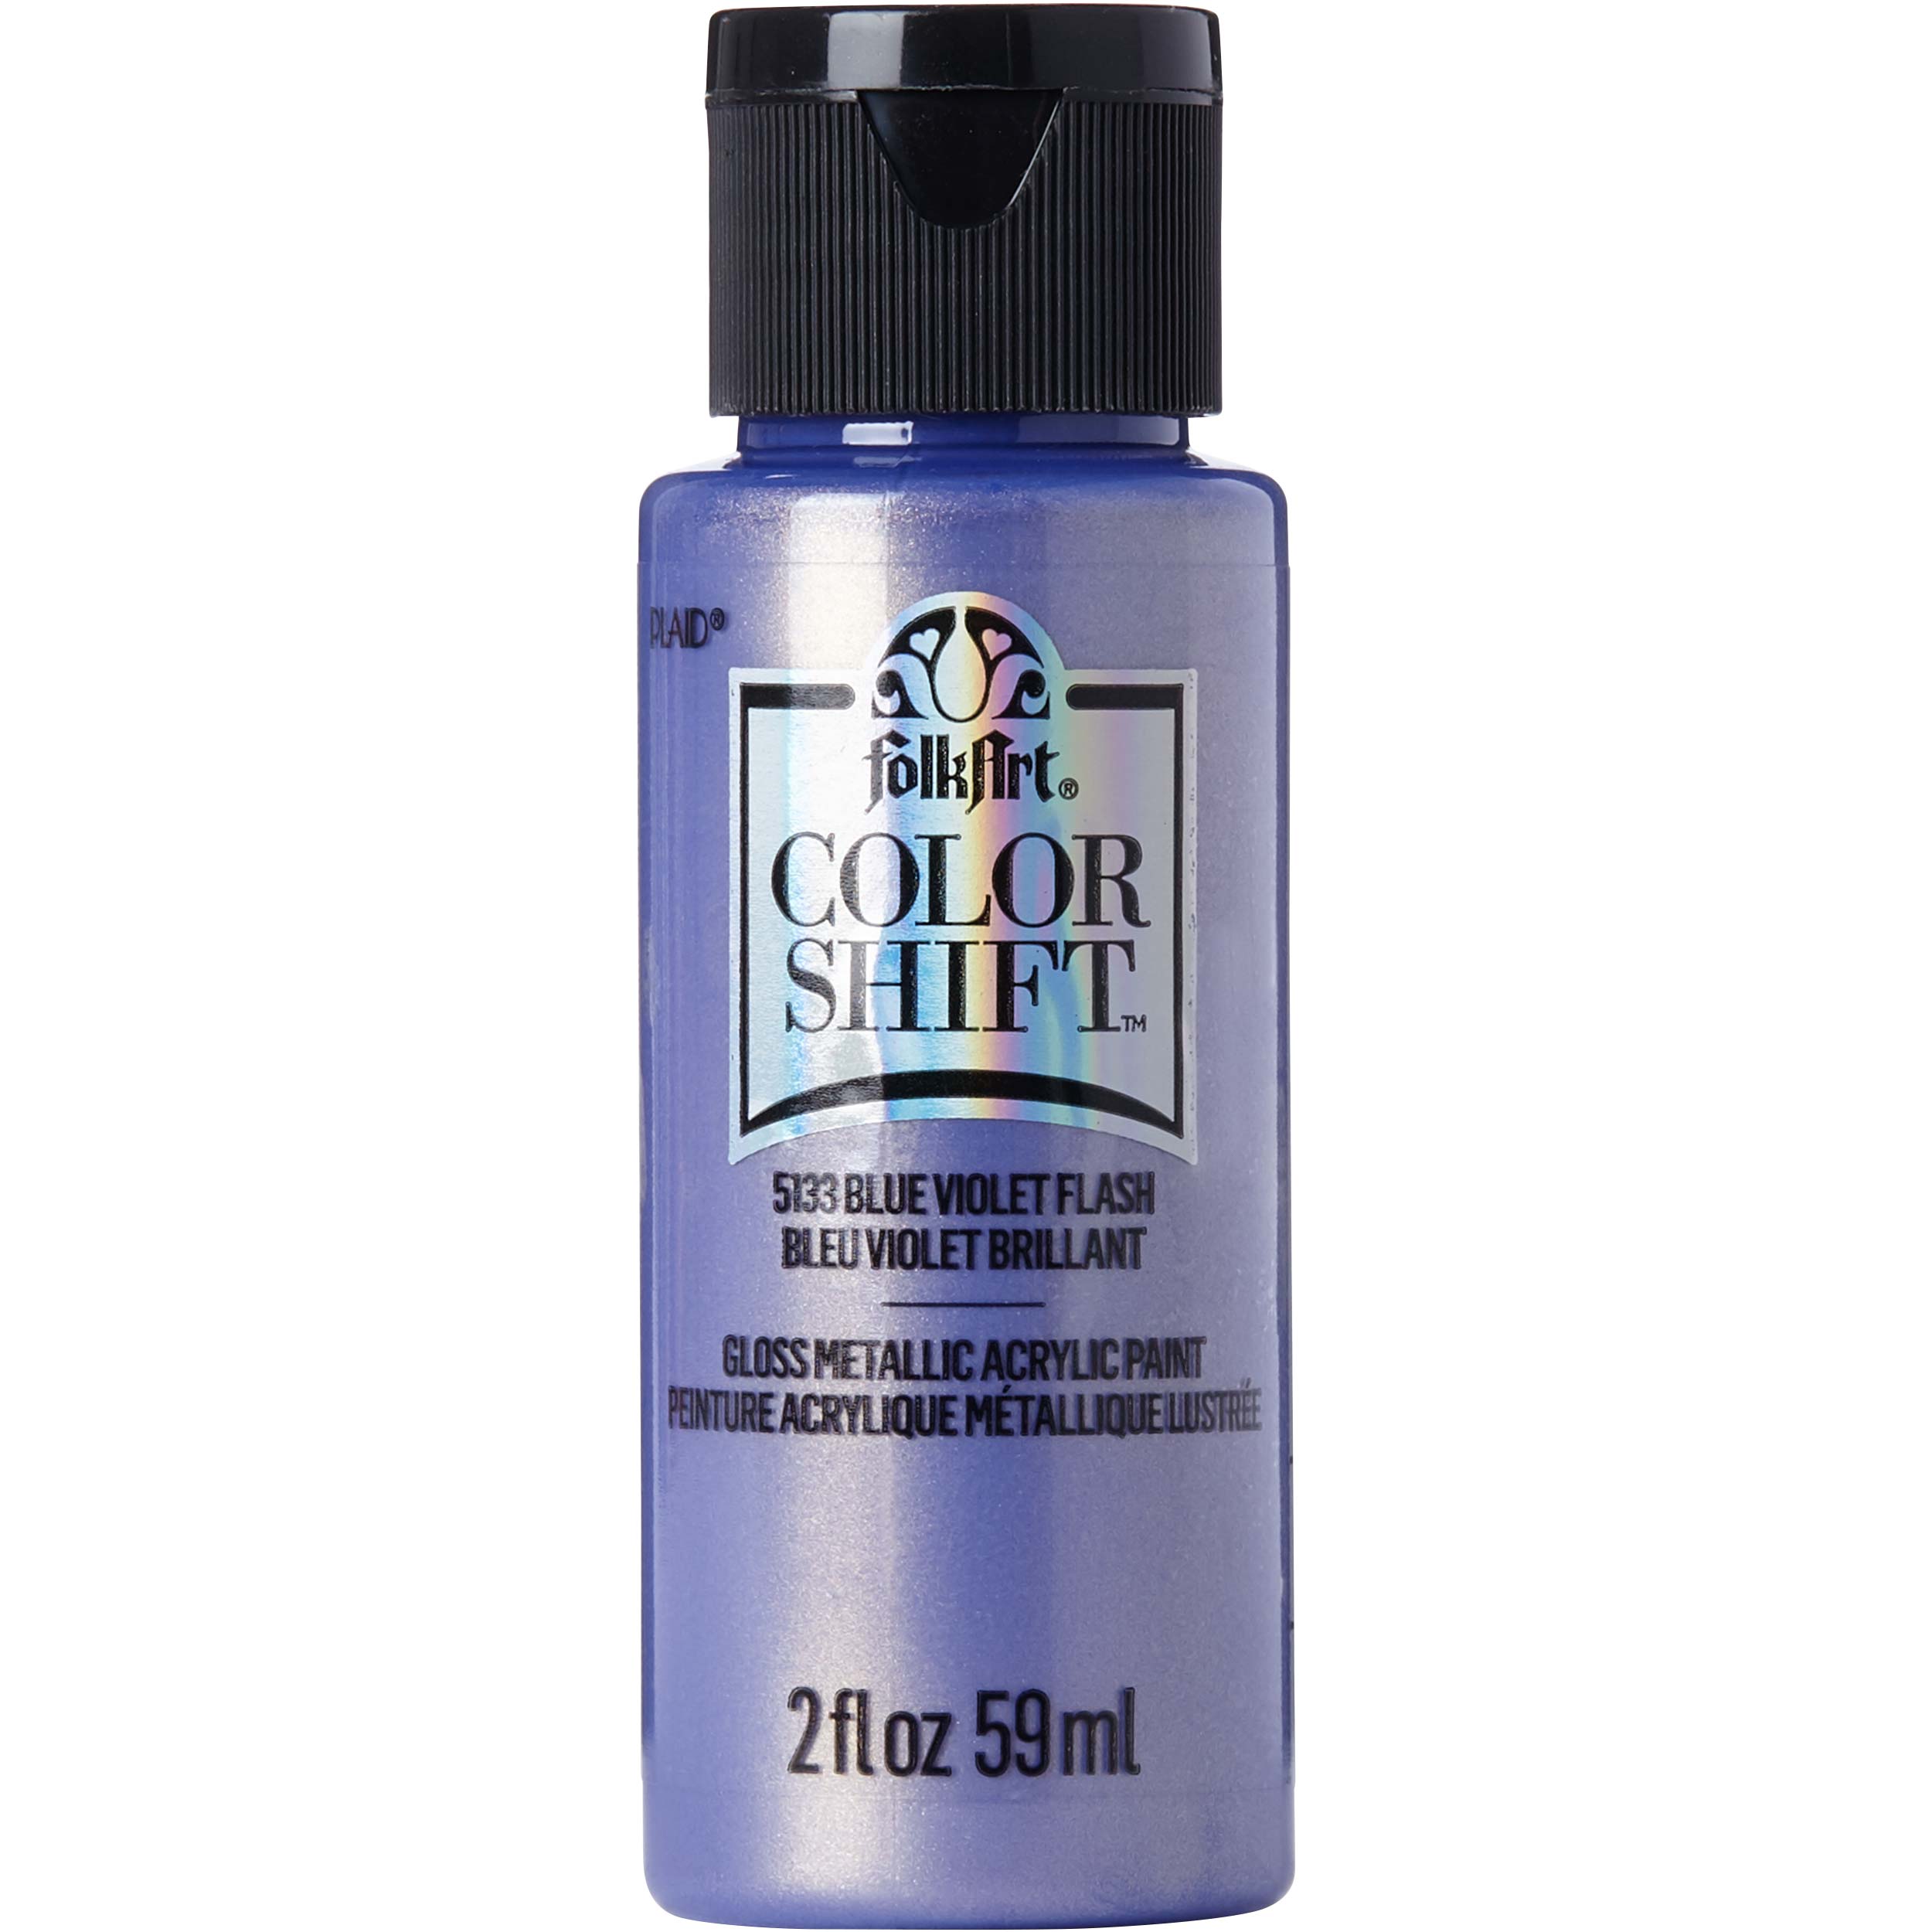 FolkArt ® Color Shift™ Acrylic Paint - Blue Violet Flash, 2 oz. - 5133